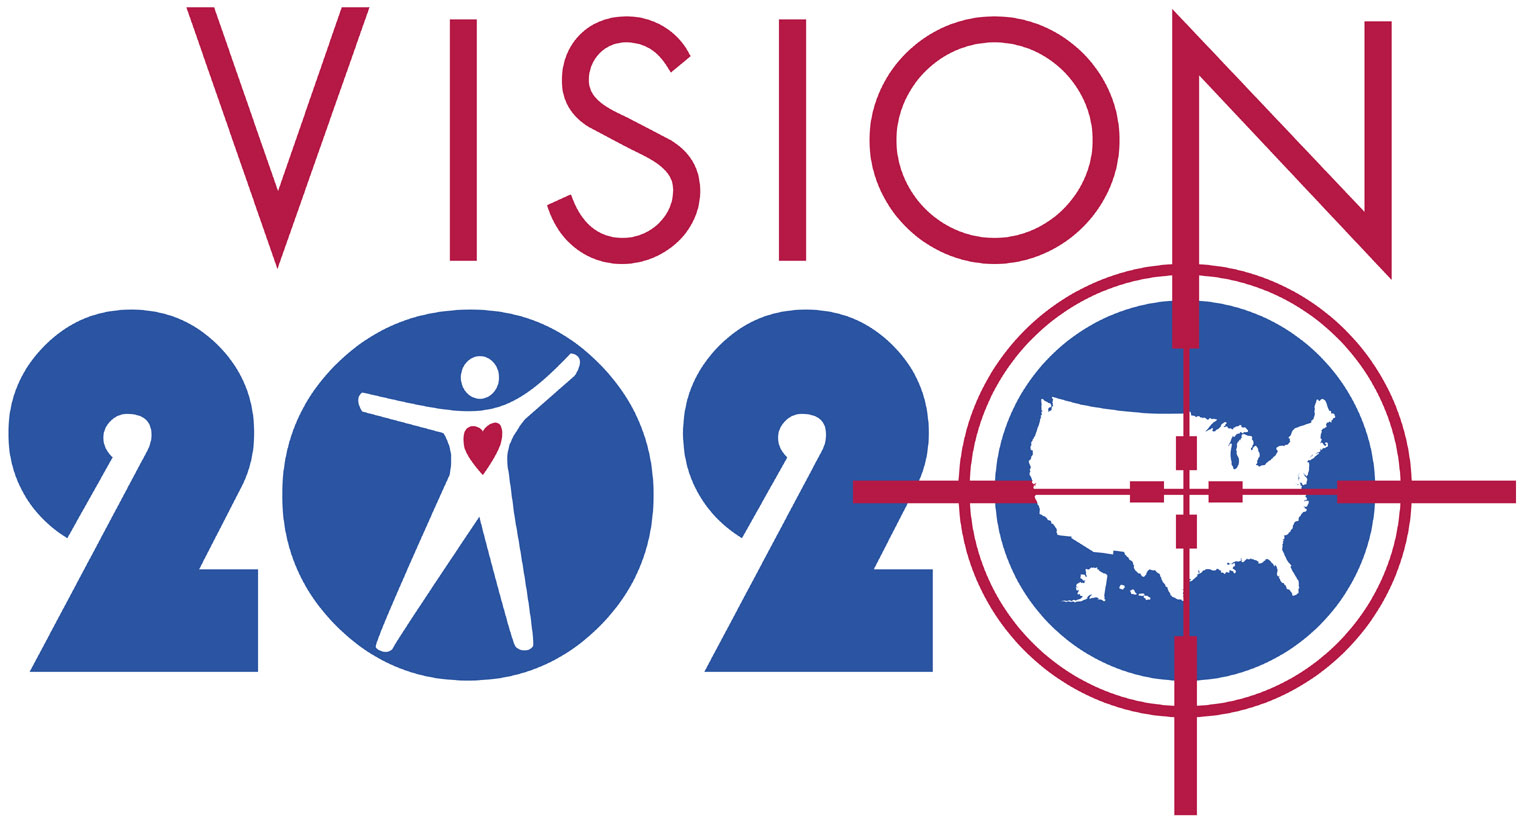  India Vision 2020